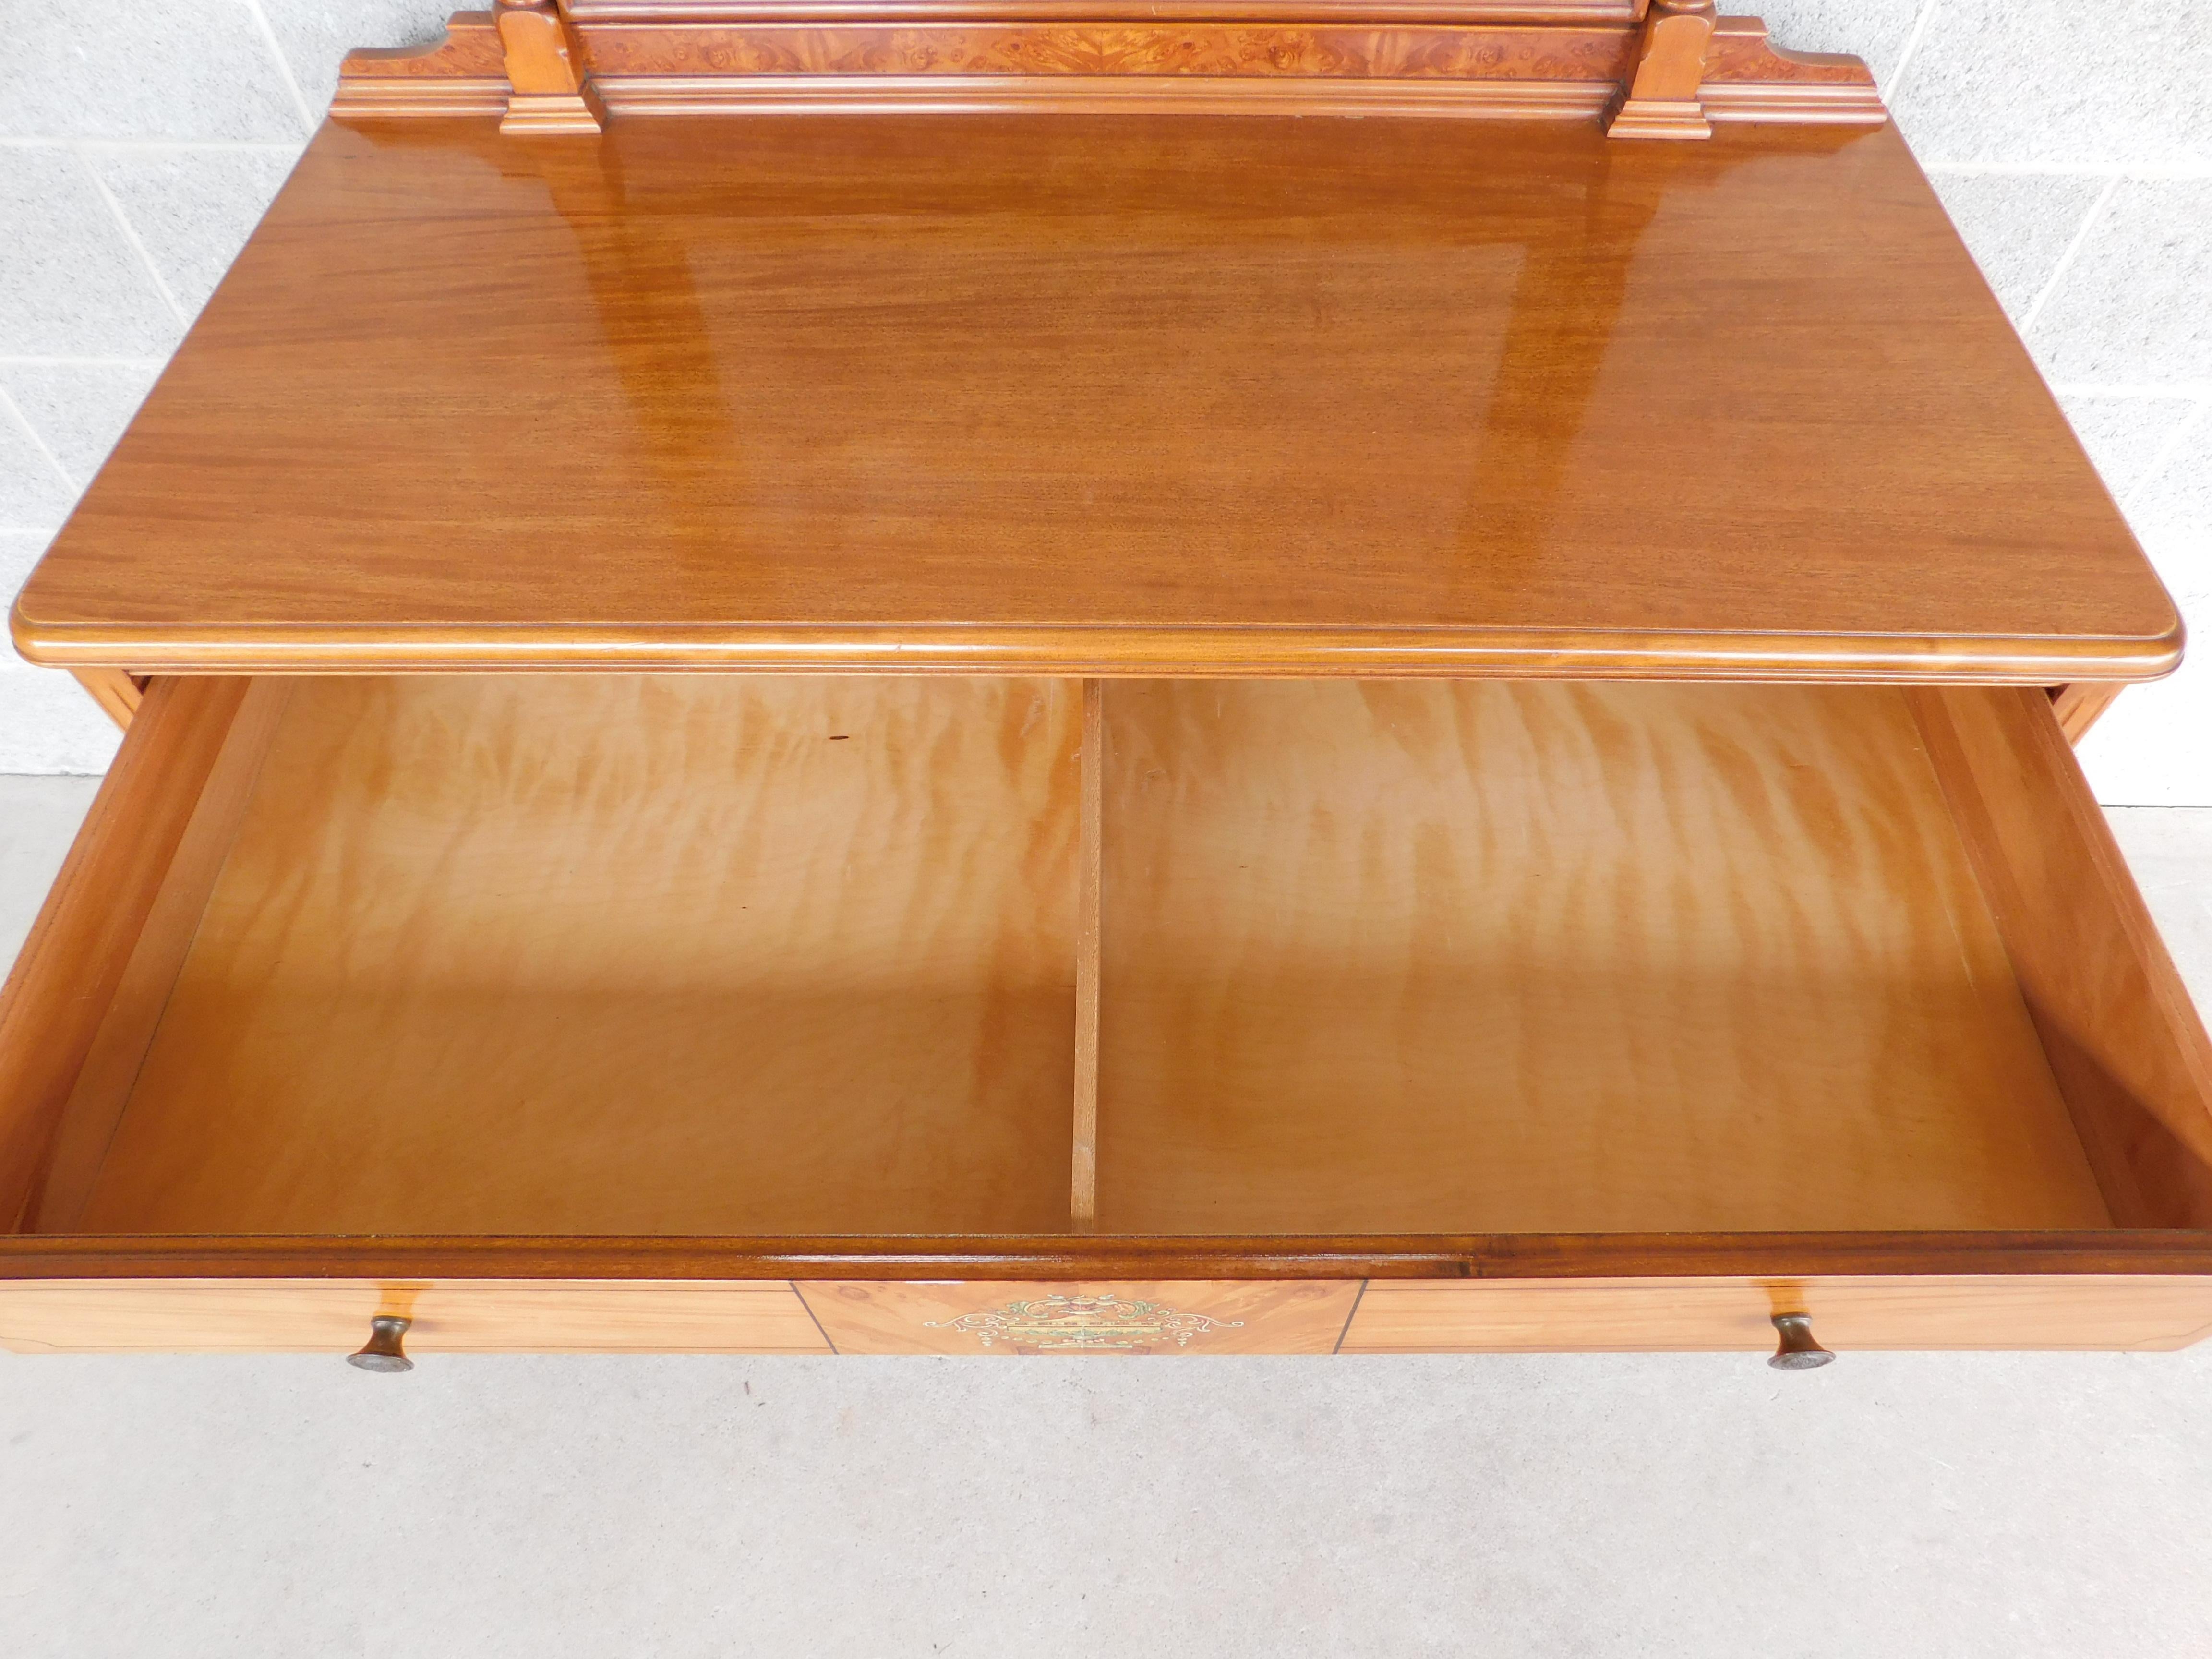 Antique Adams / Regency Style Satinwood Dresser & Mirror 44.5